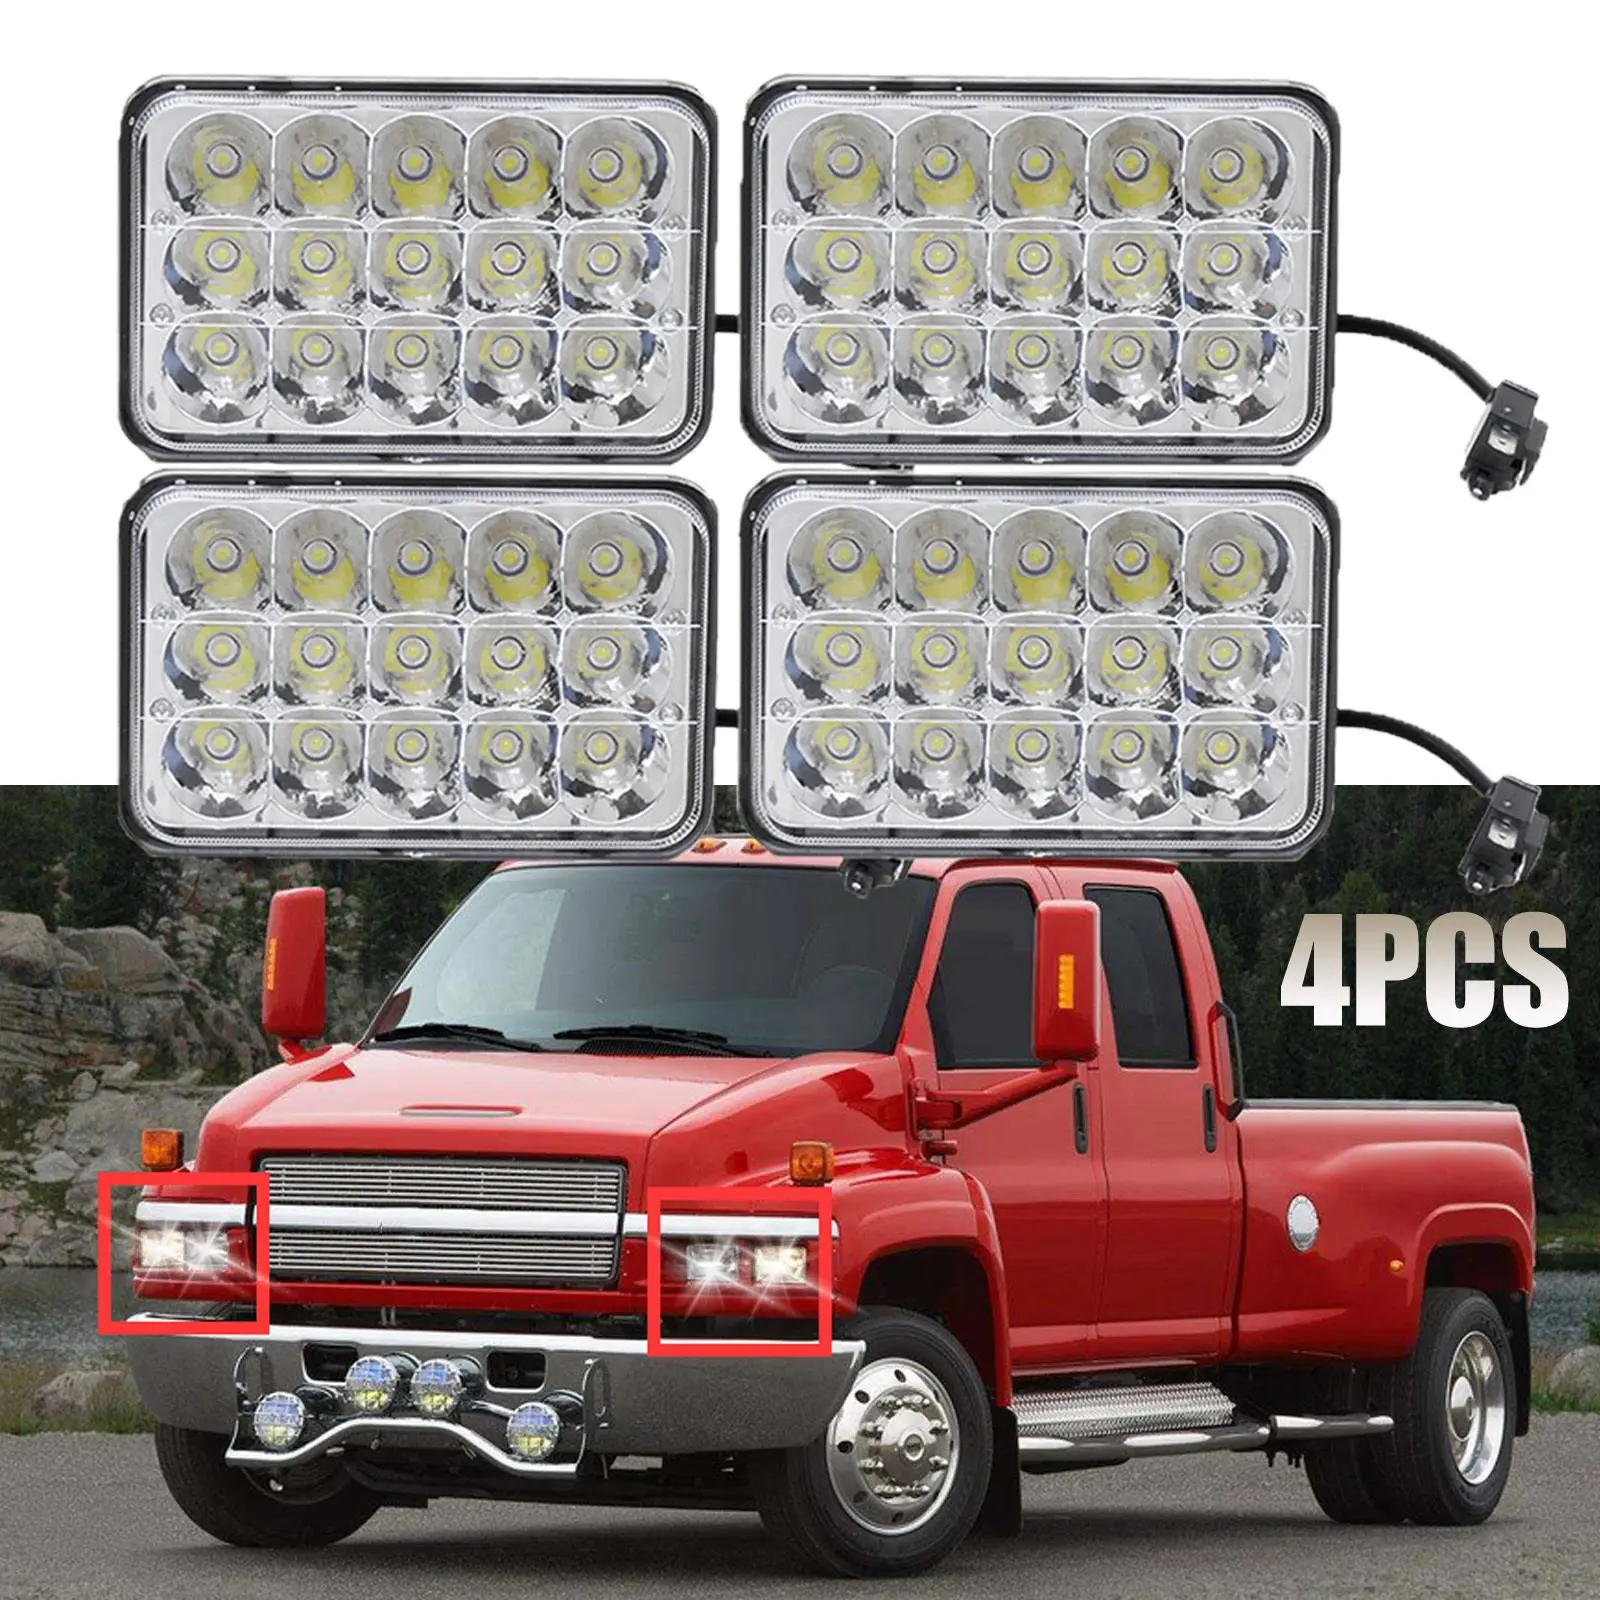 4x6/" LED Headlights For Chevrolet Kodiak C4500 and C5500 2003-2009 Models Qty 4